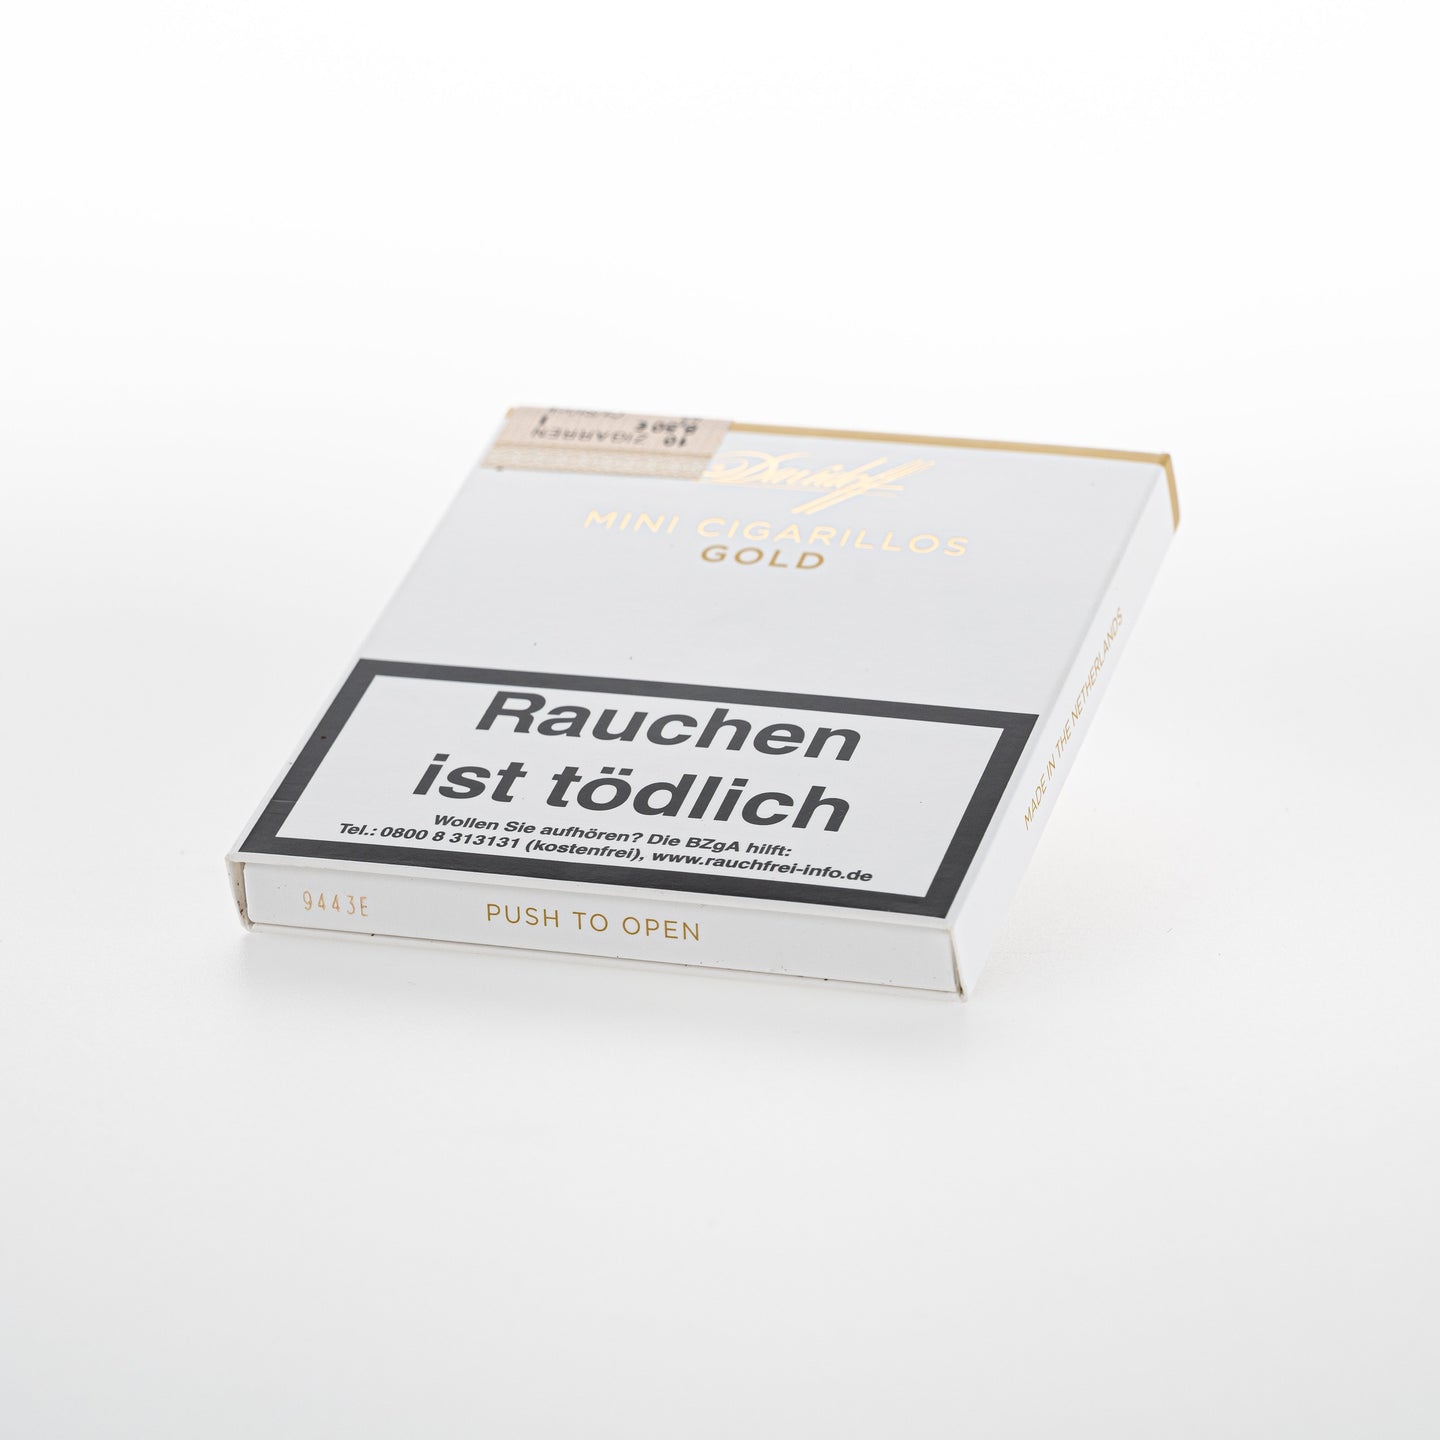 Davidoff Mini Cigarillo Gold (10 per pack)